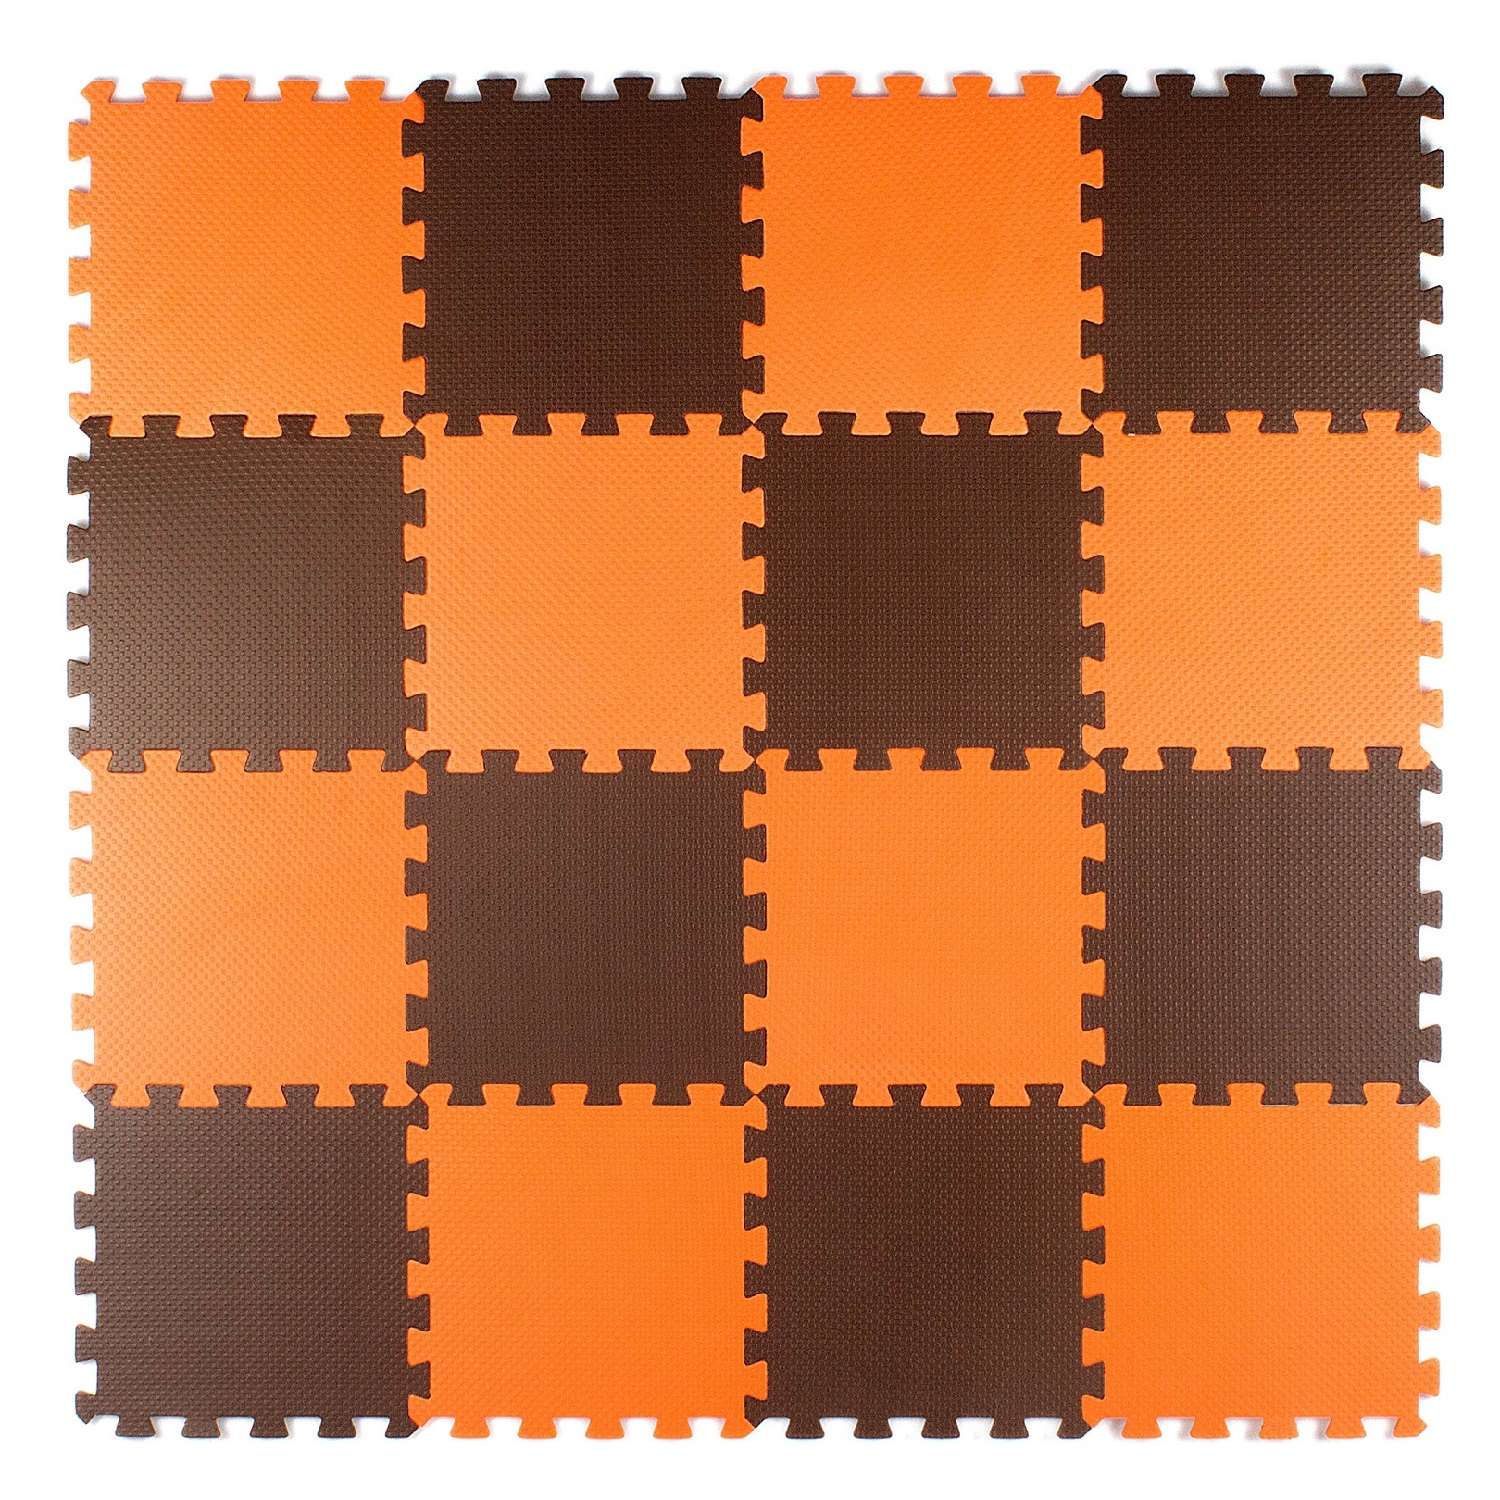 Развивающий детский коврик Eco cover мягкий пол для ползания оранжево-коричневый 25х25 см. - фото 2